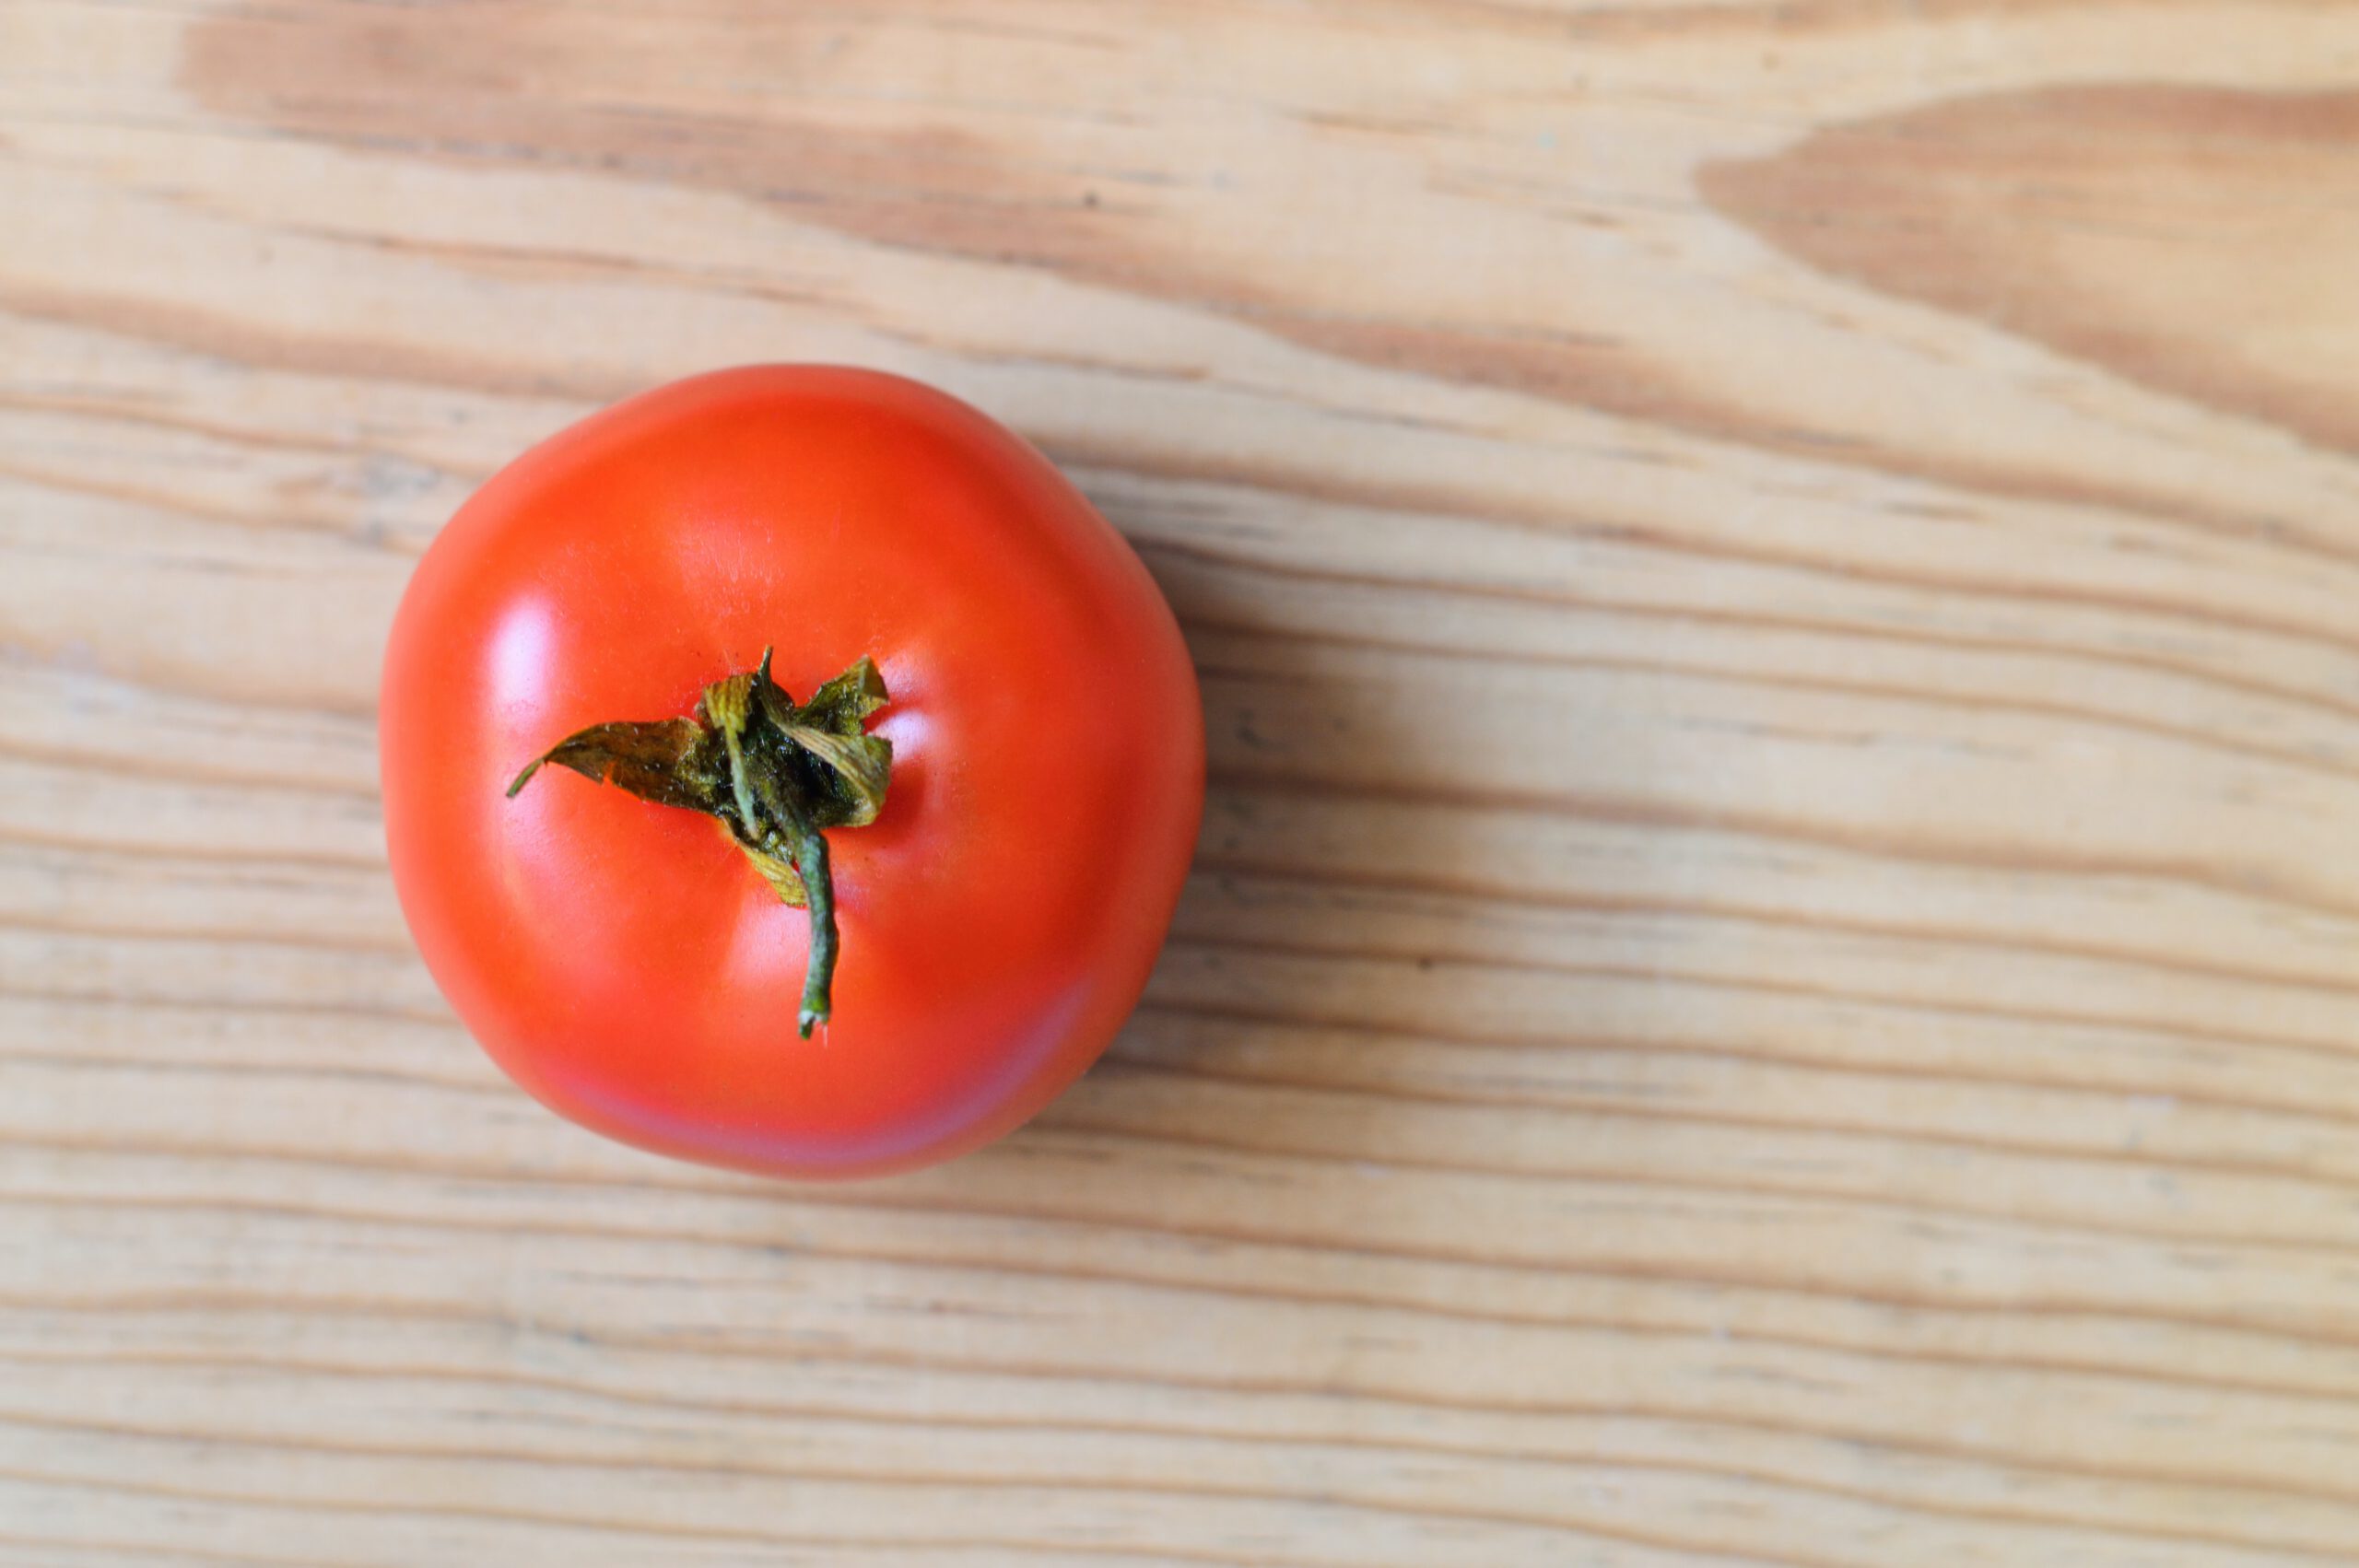 Widok z góry na czerwonego pomidora z zielonym ogonkiem, leżący na drewnianym blacie